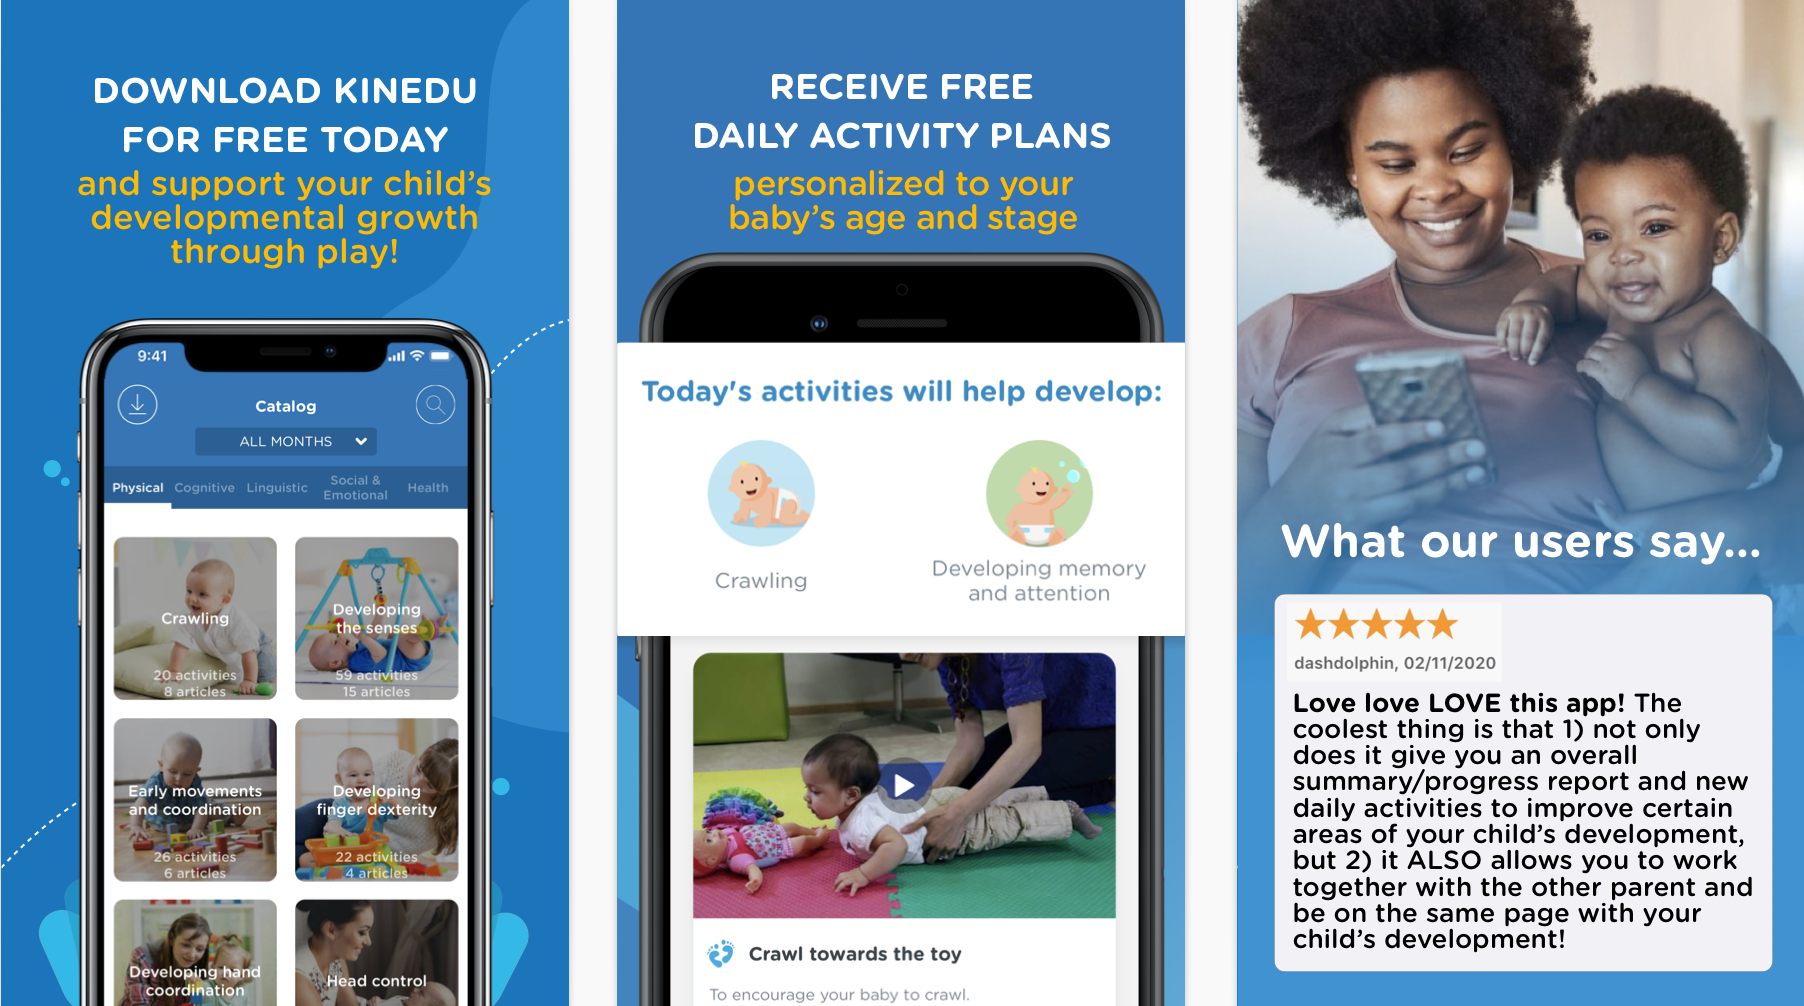 Kinedu is a free baby development app